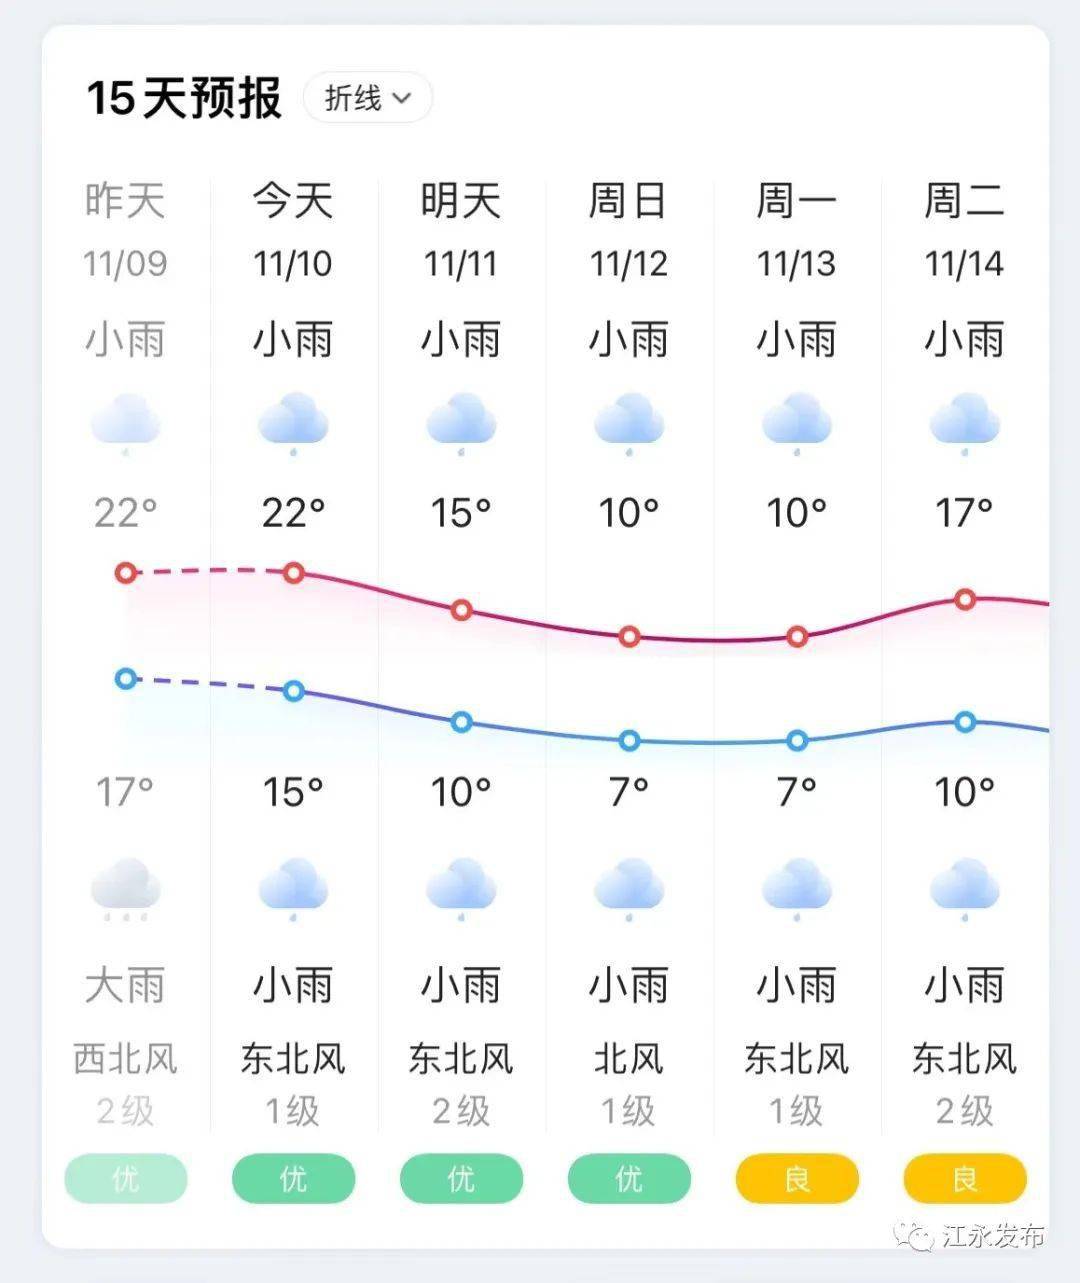 江永未来四天天气北风加大至4～5级,气温逐步下降